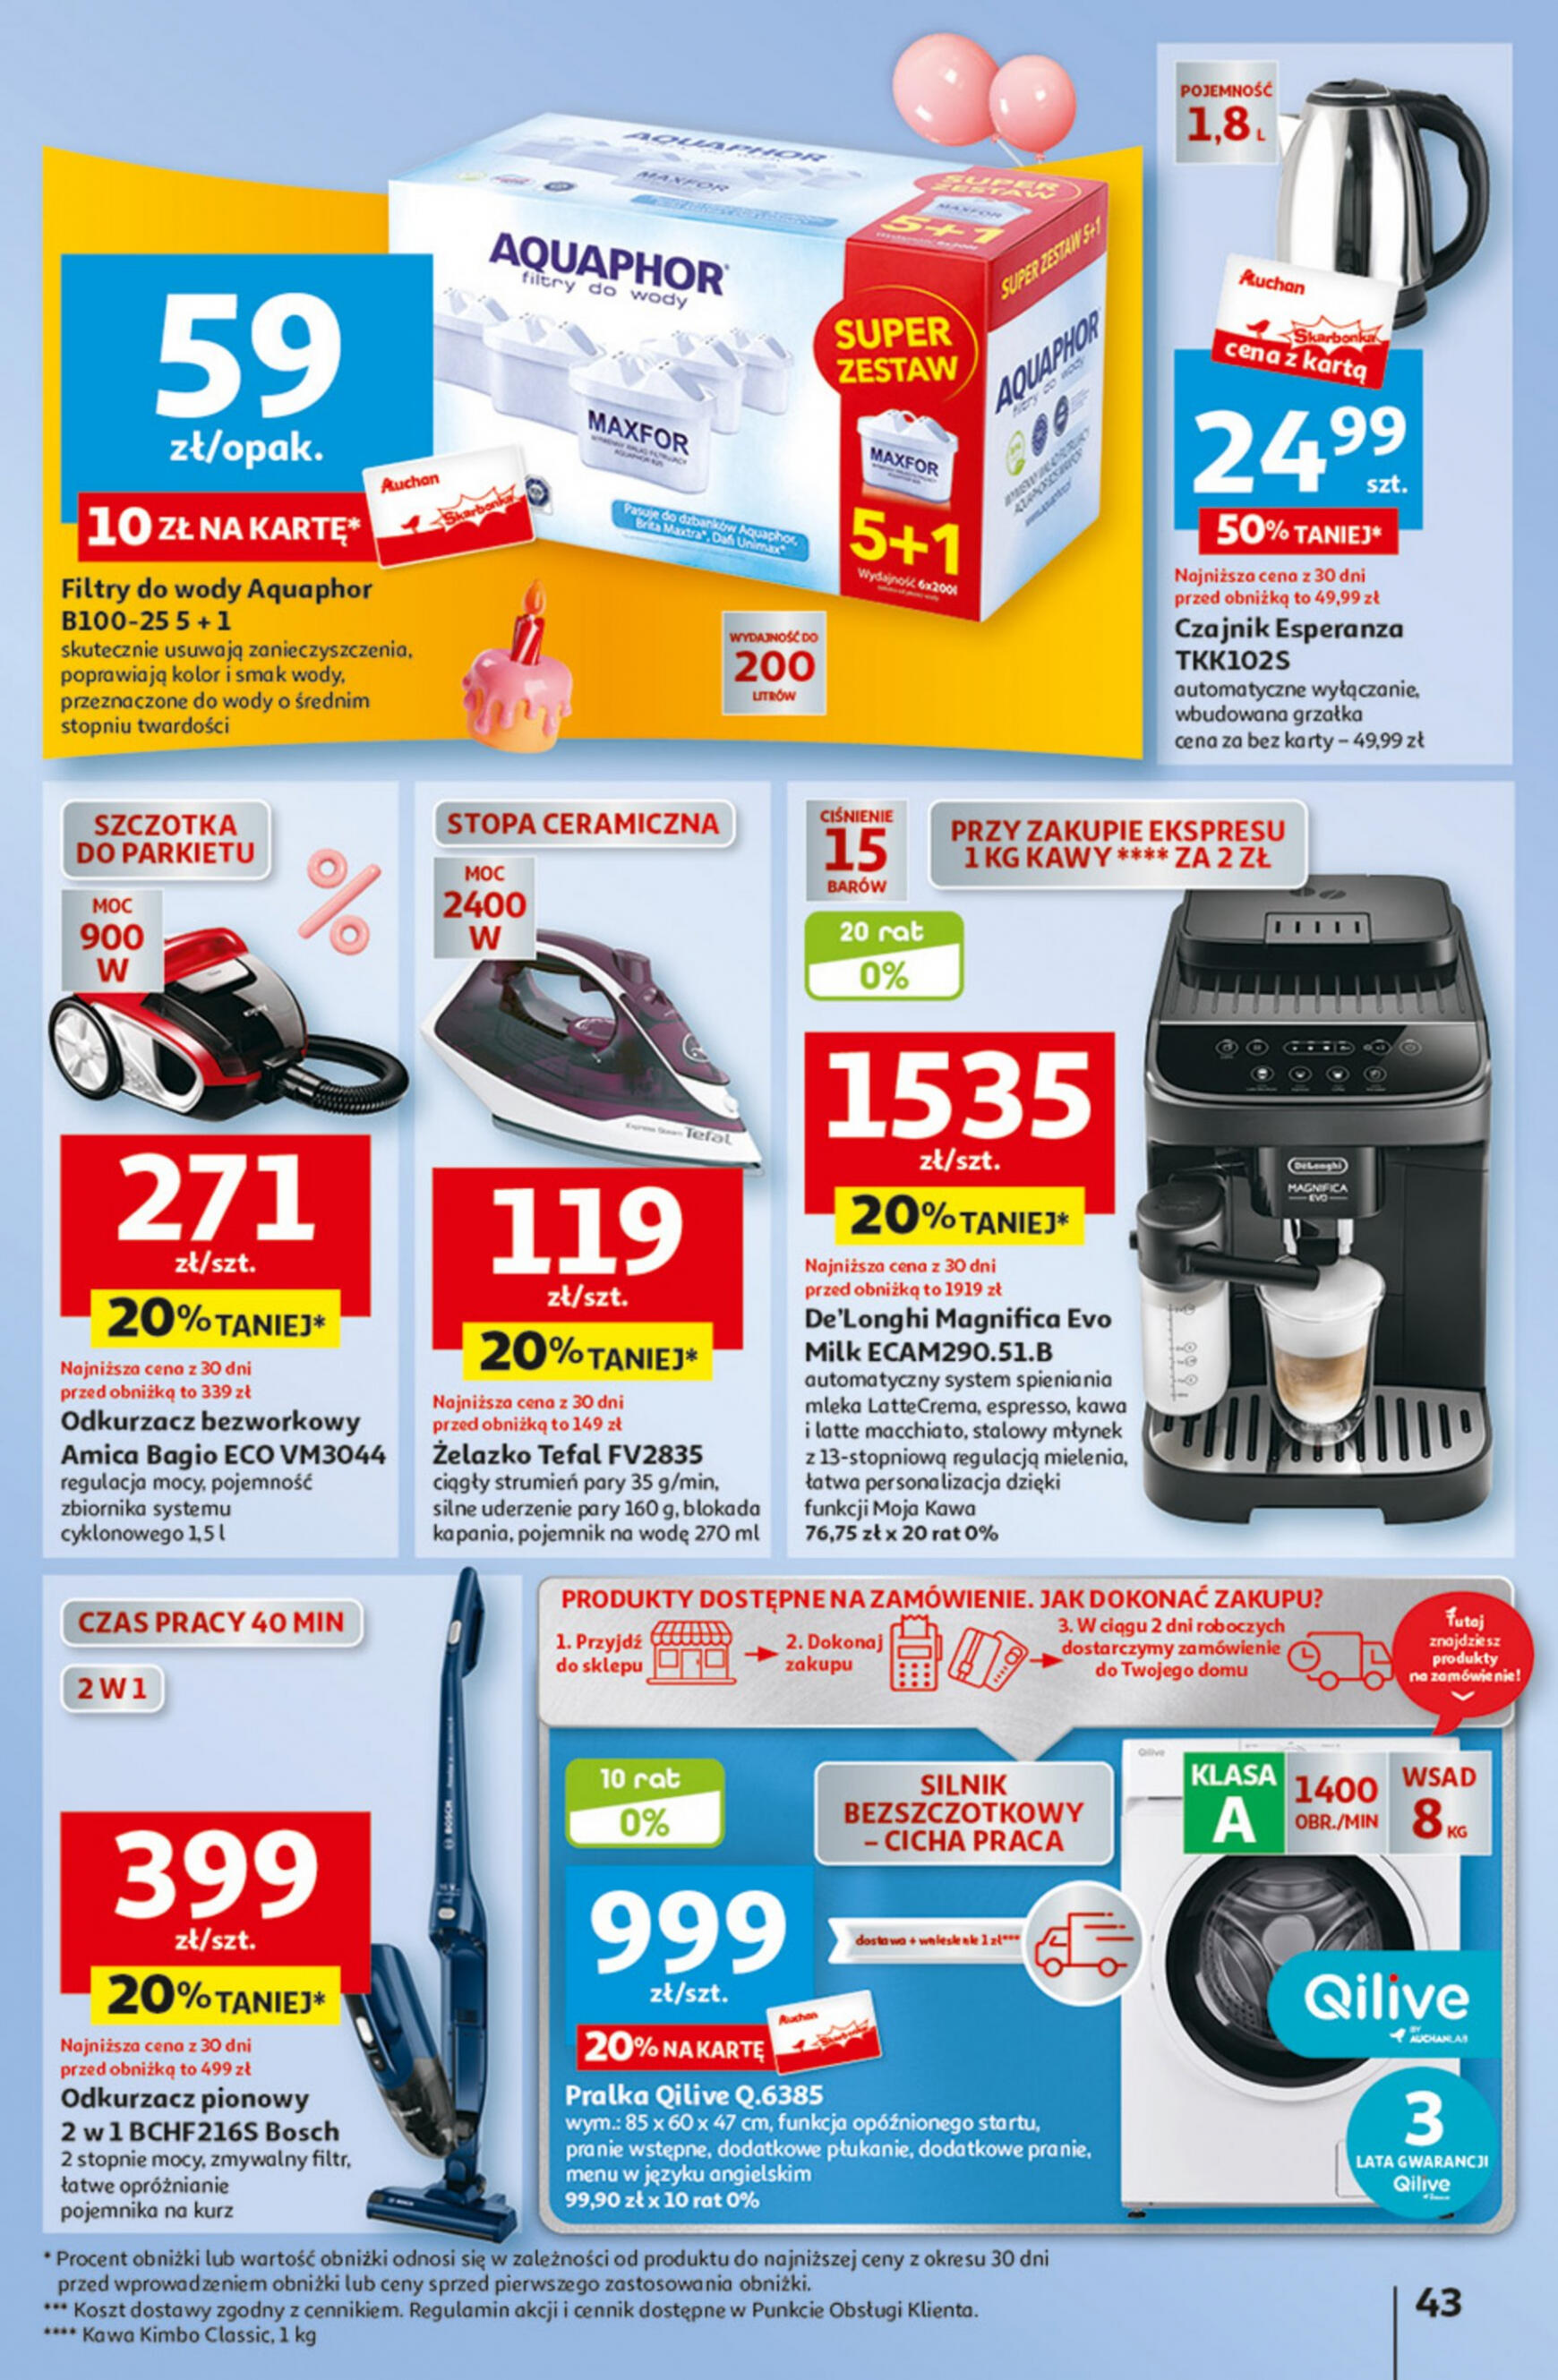 auchan - Hipermarket Auchan - Gazetka Jeszcze taniej na urodziny gazetka aktualna ważna od 09.05. - 15.05. - page: 43